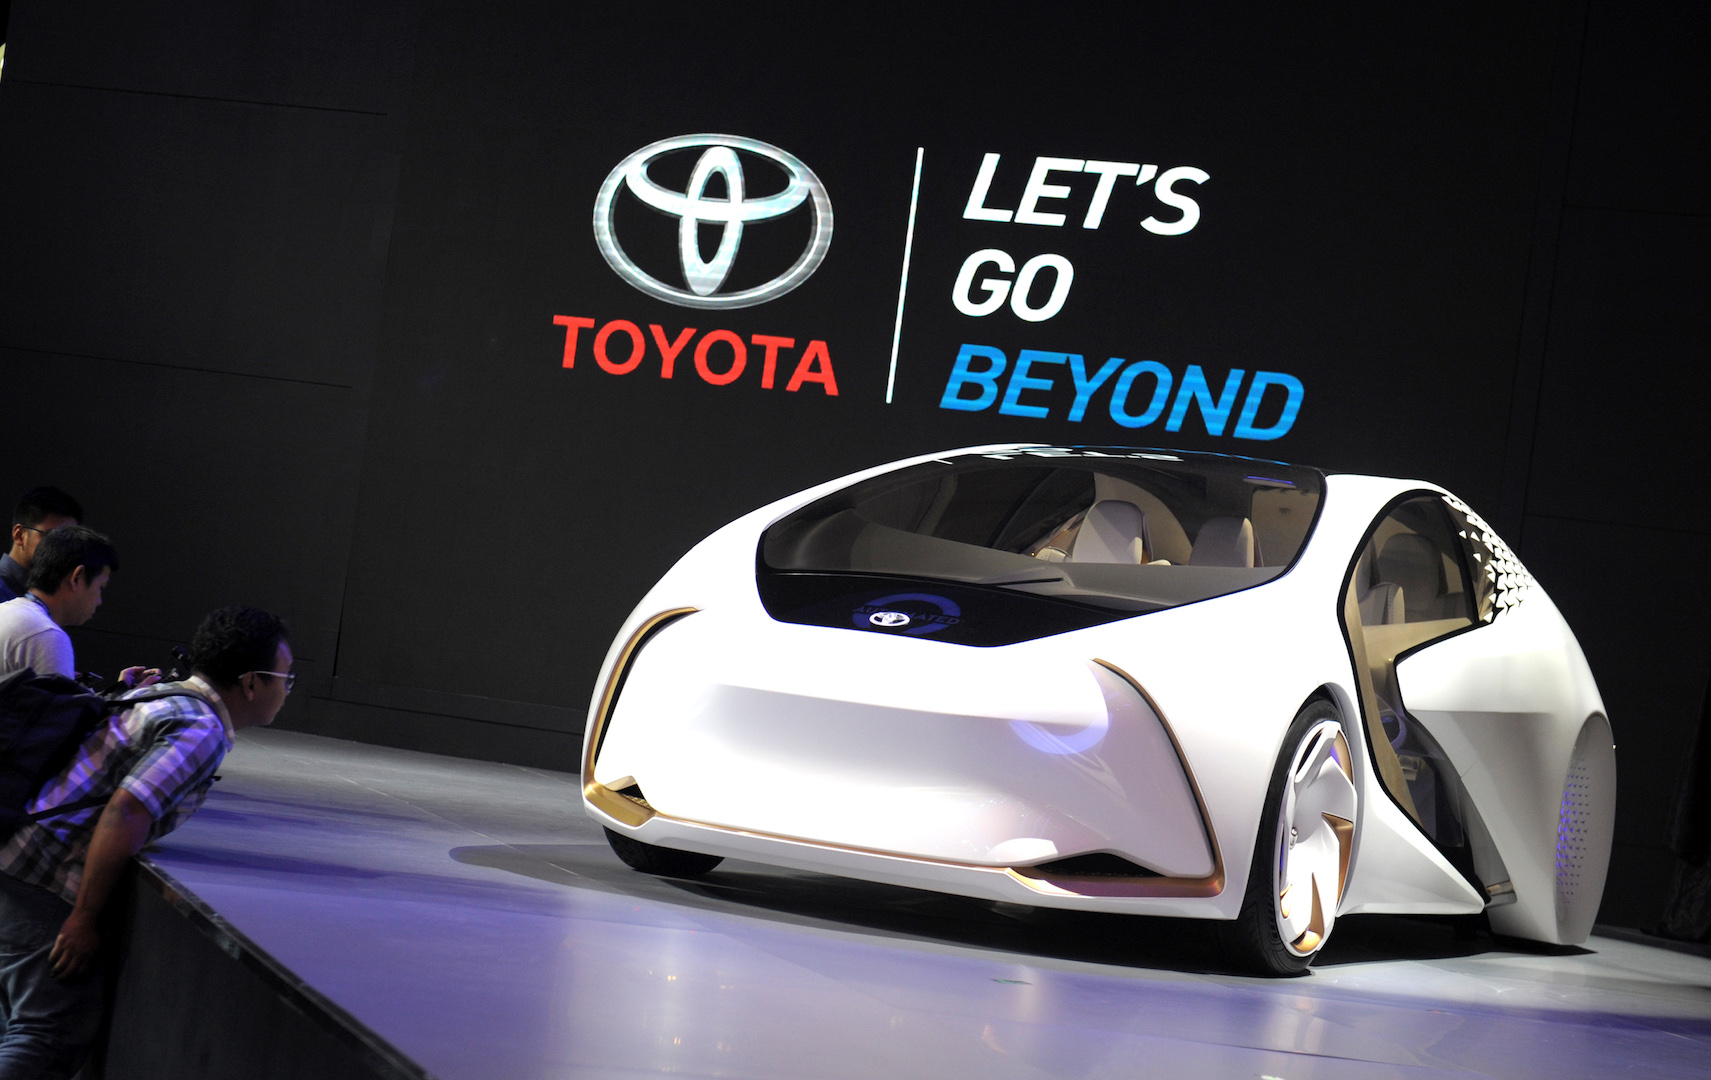 Laporan dari Singapura: Toyota Terpengaruh Larangan Impor Mobil Mewah?